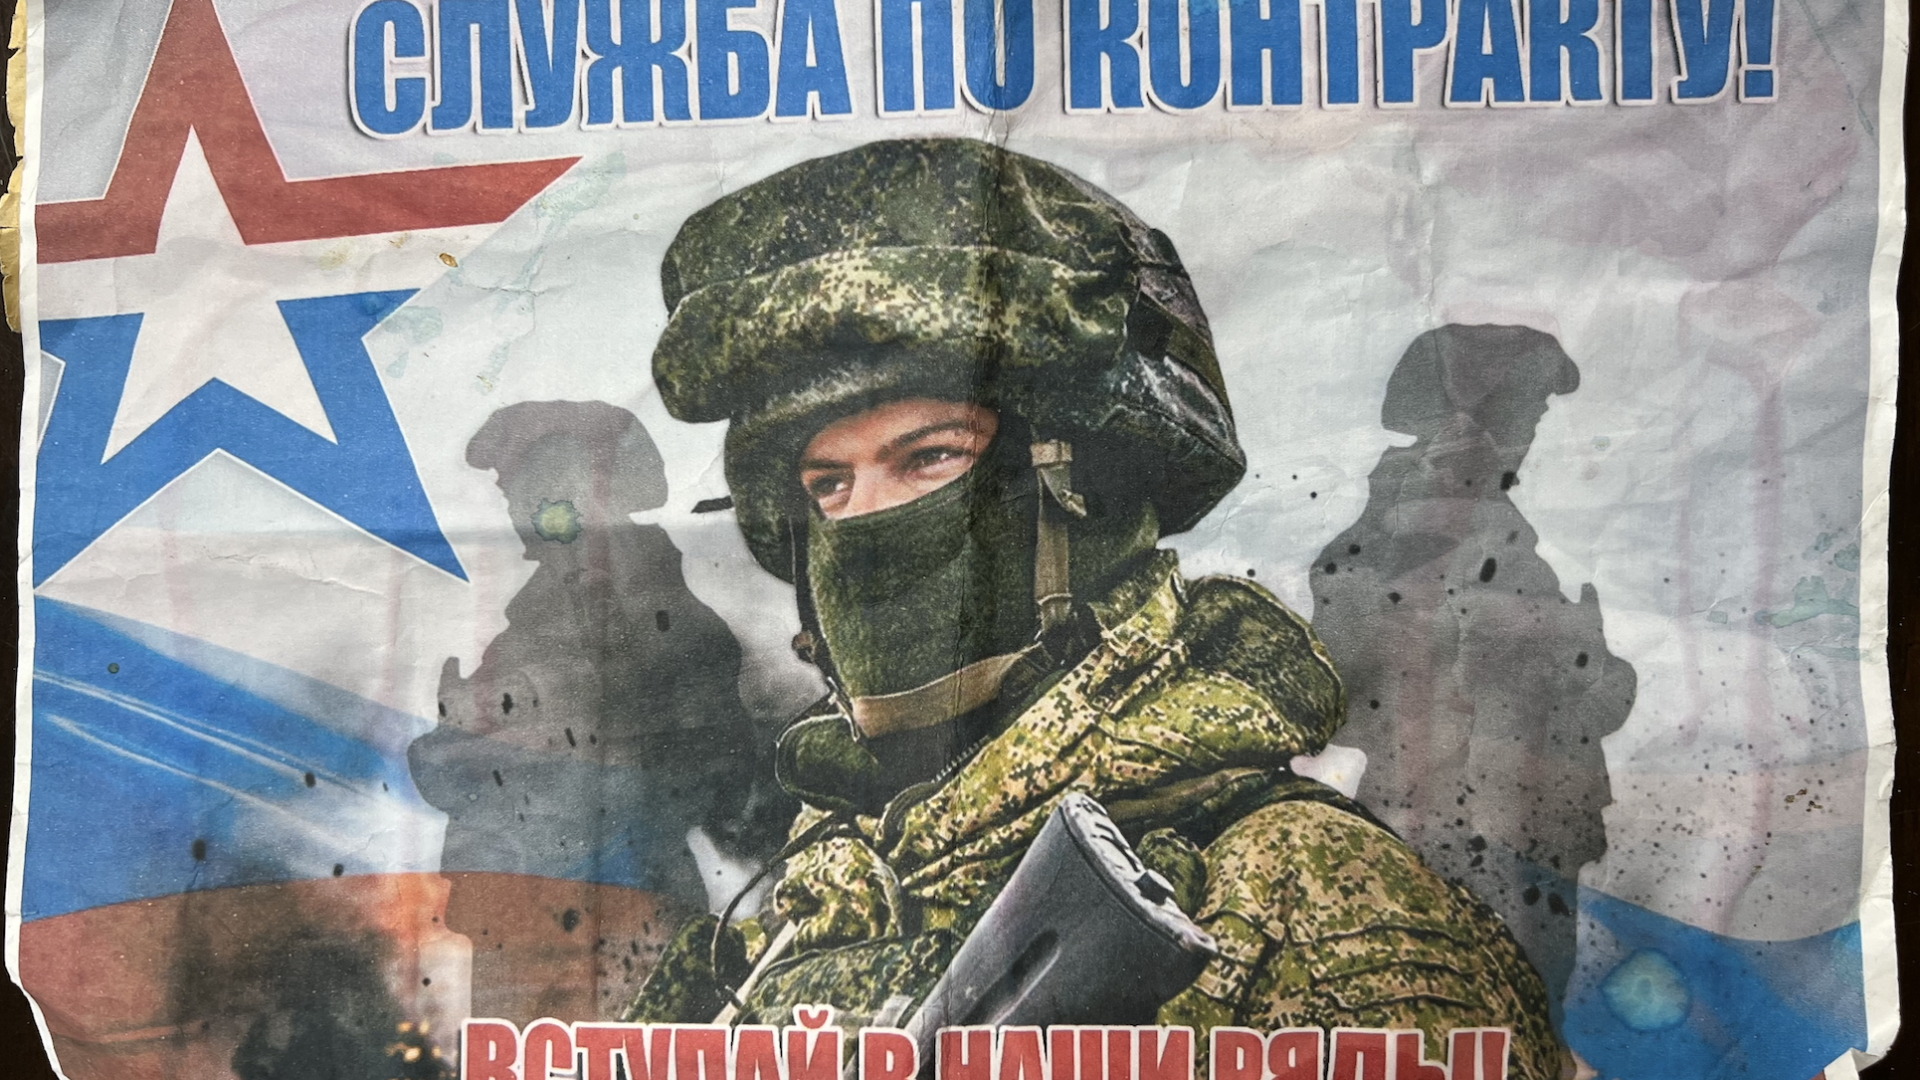 Anchetă Rise Project. Bărbați moldoveni de peste Prut, racolați în Armata Rusă. Cum se fac recrutările